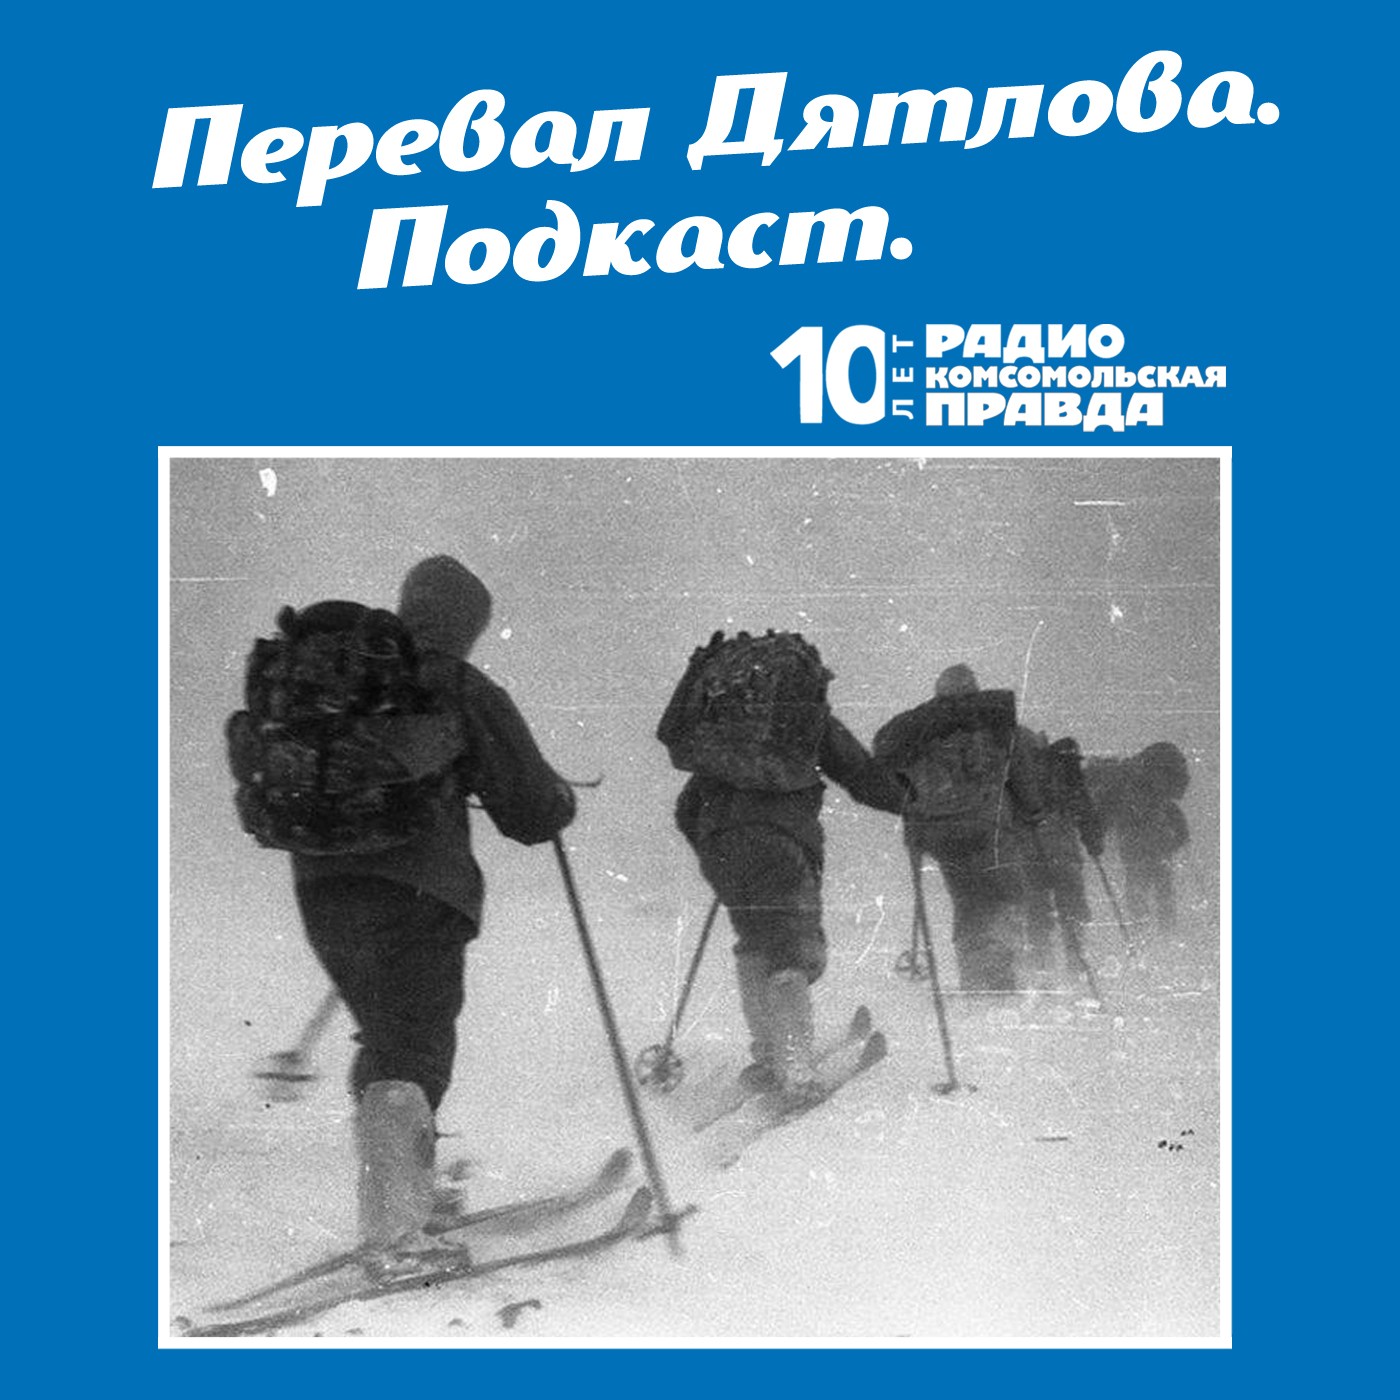 Скачать Трагедия на перевале Дятлова: 64 версии загадочной гибели туристов в 1959 году. Часть 117 и 118 - Радио «Комсомольская правда»